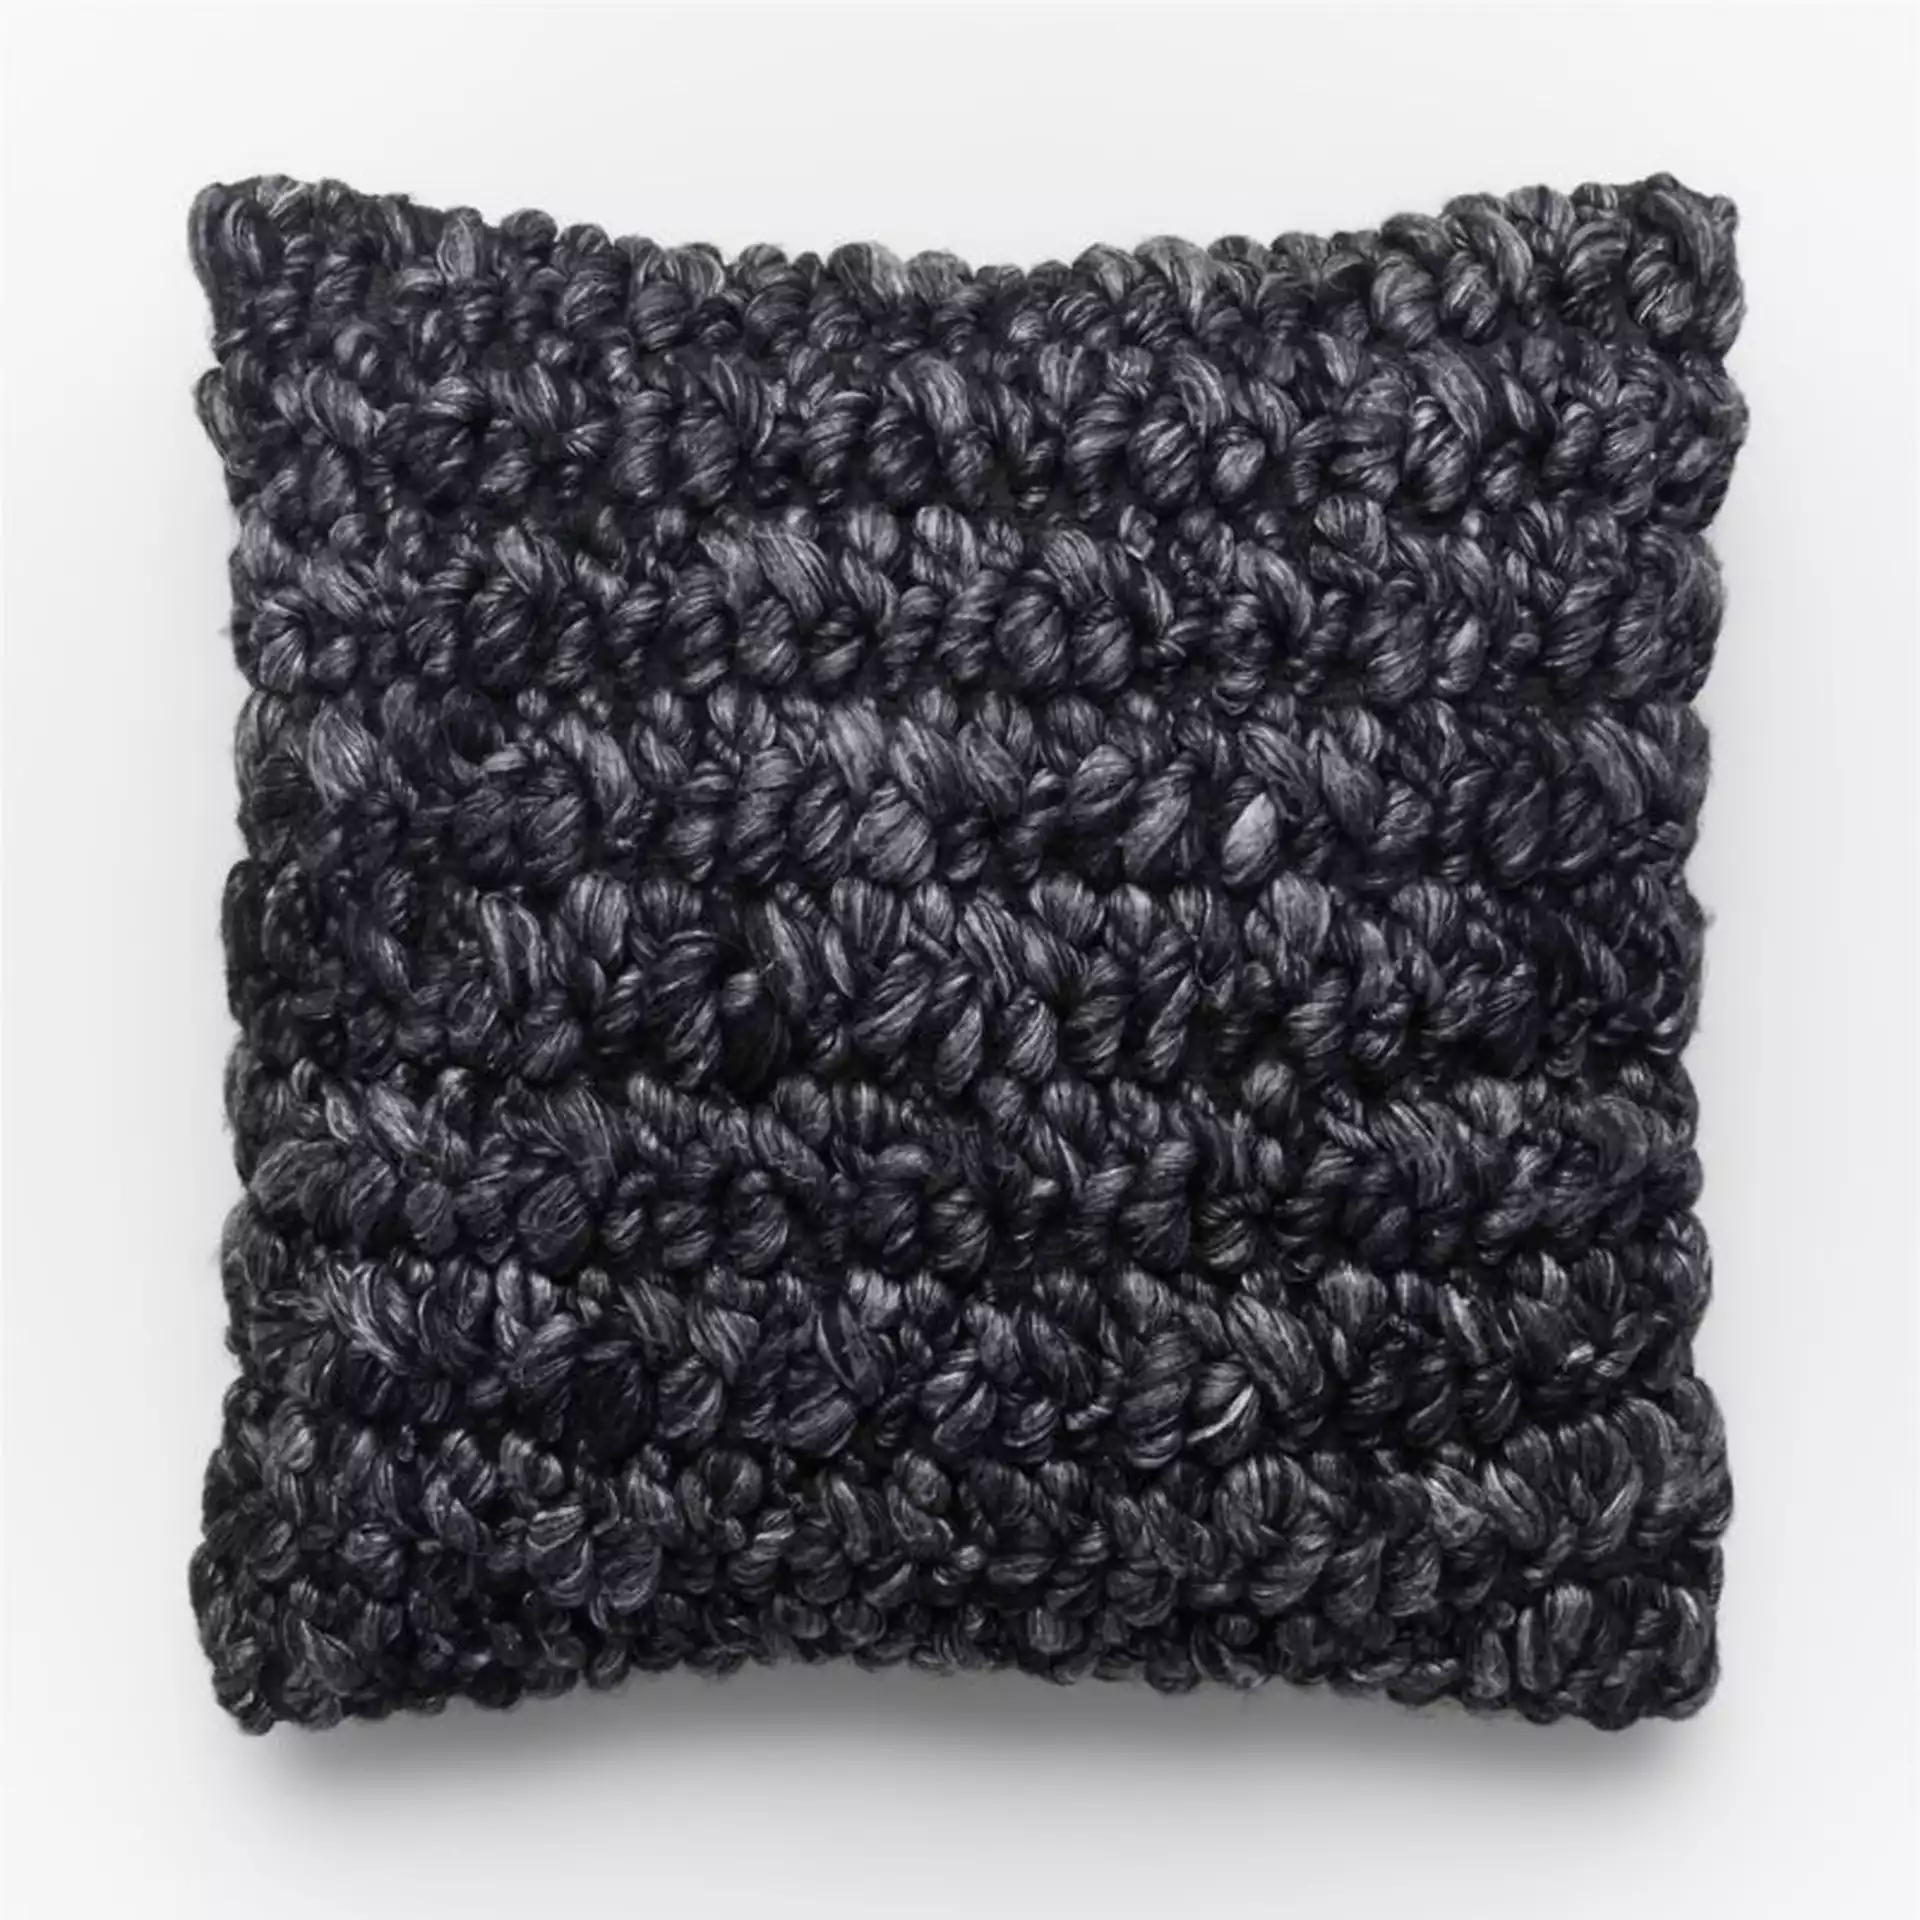 Tillie Wool Pillow, Black, 20" x 20"